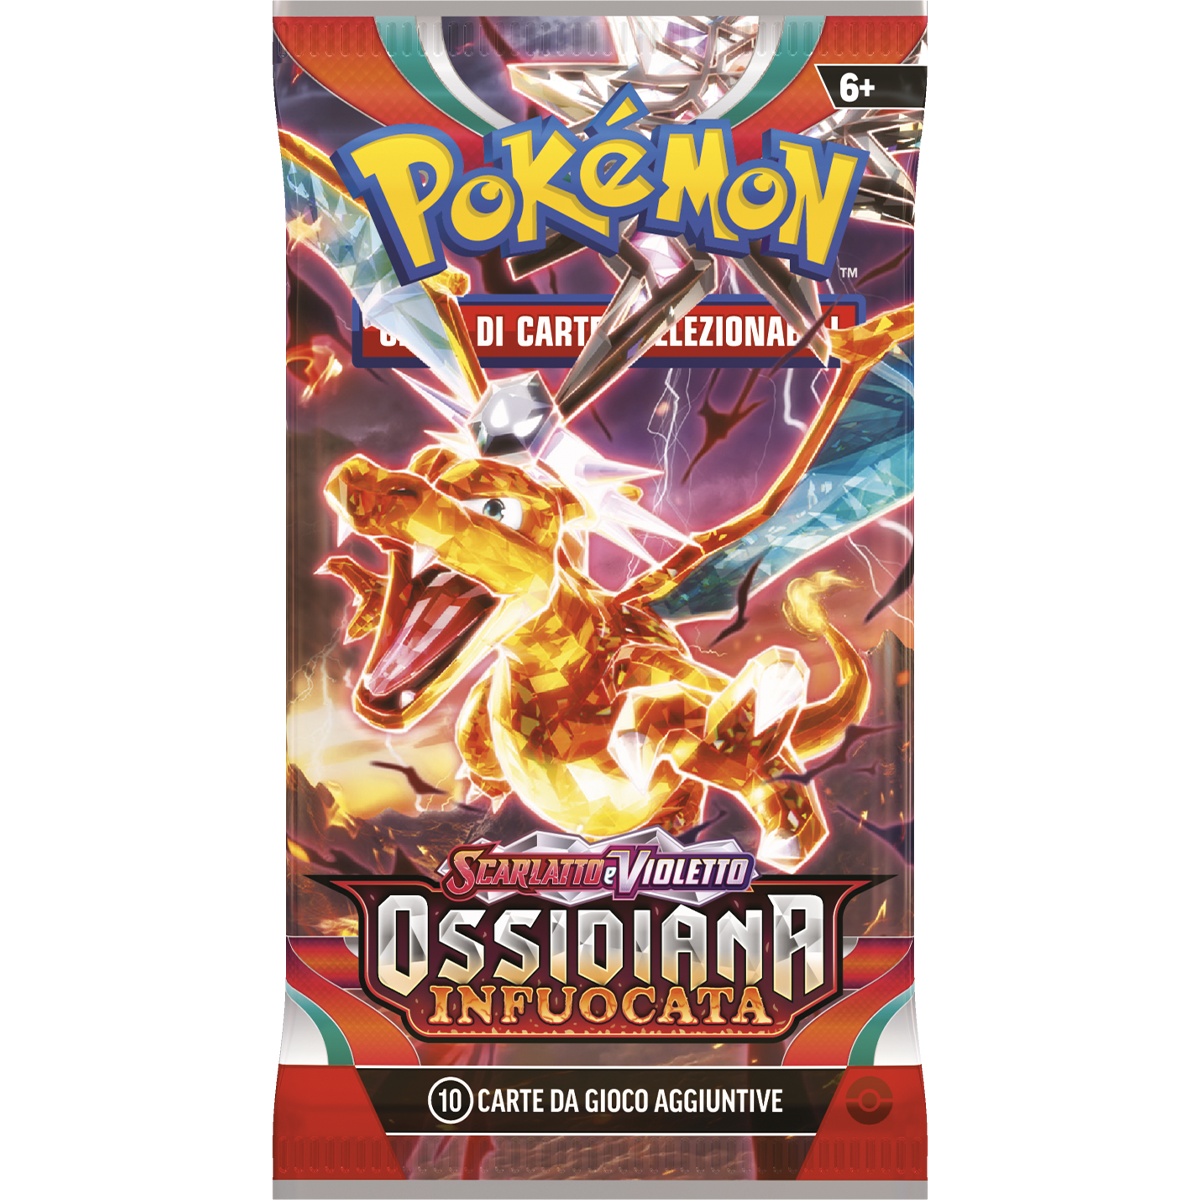 Pokemon scarlatto e violetto sv3 ossidiana infuocata busta 10 carte - POKEMON